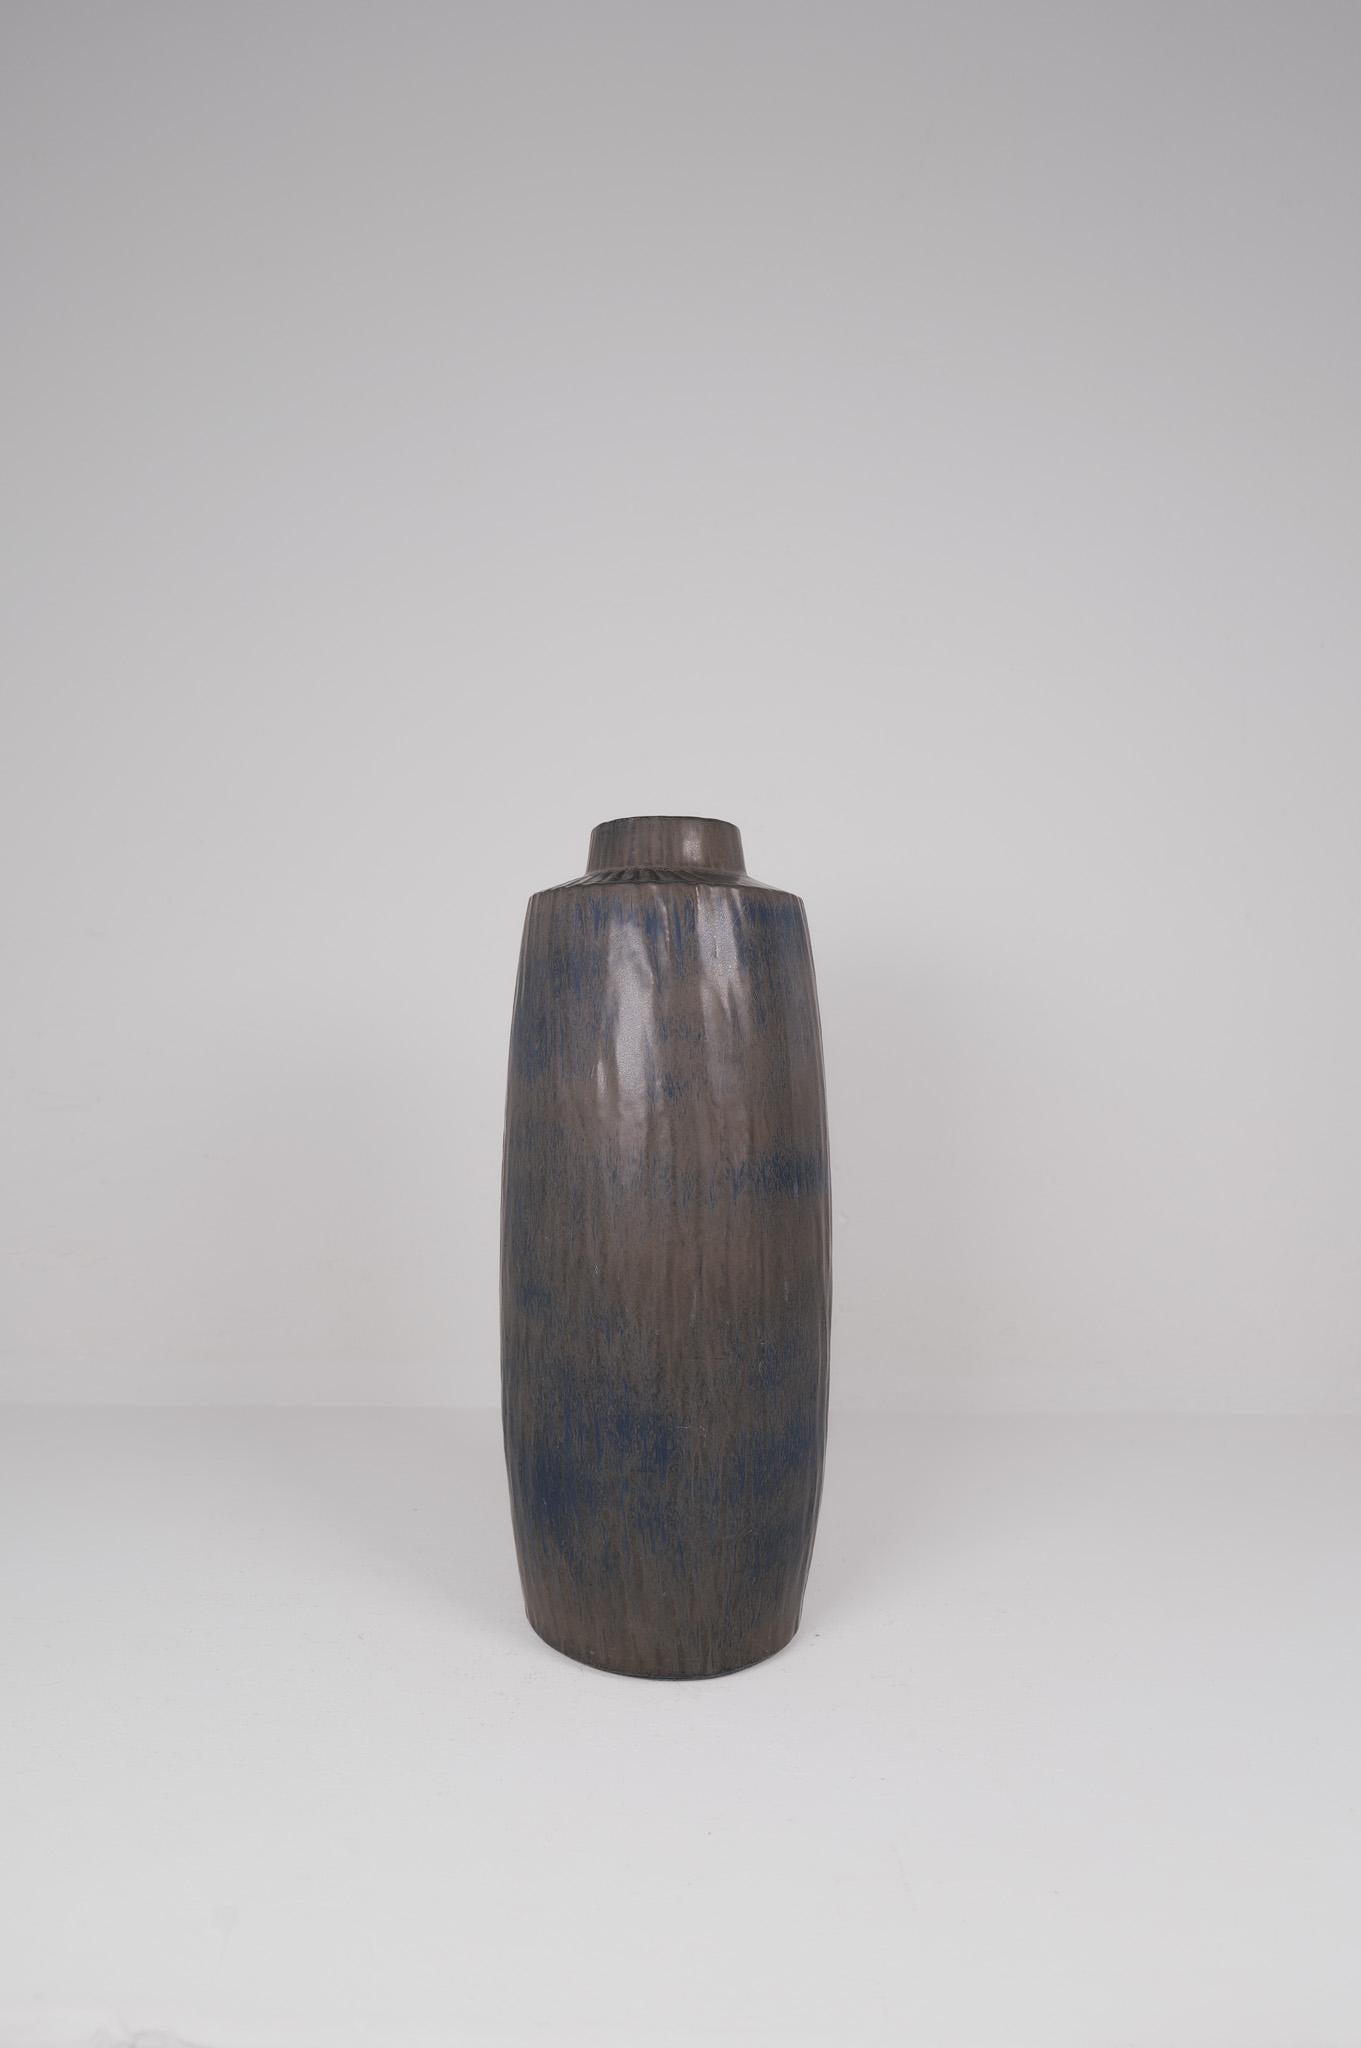 Wunderschöne große Vase aus Keramik mit dem Namen Rubus, entworfen von einer der Ikonen des schwedischen Keramikdesigns Gunnar Nylund. Diese mit unglaublichen Farben in Blau, Grau und Dunkelbraun. 

Guter Vintage-Zustand, mit Gebrauchsspuren.